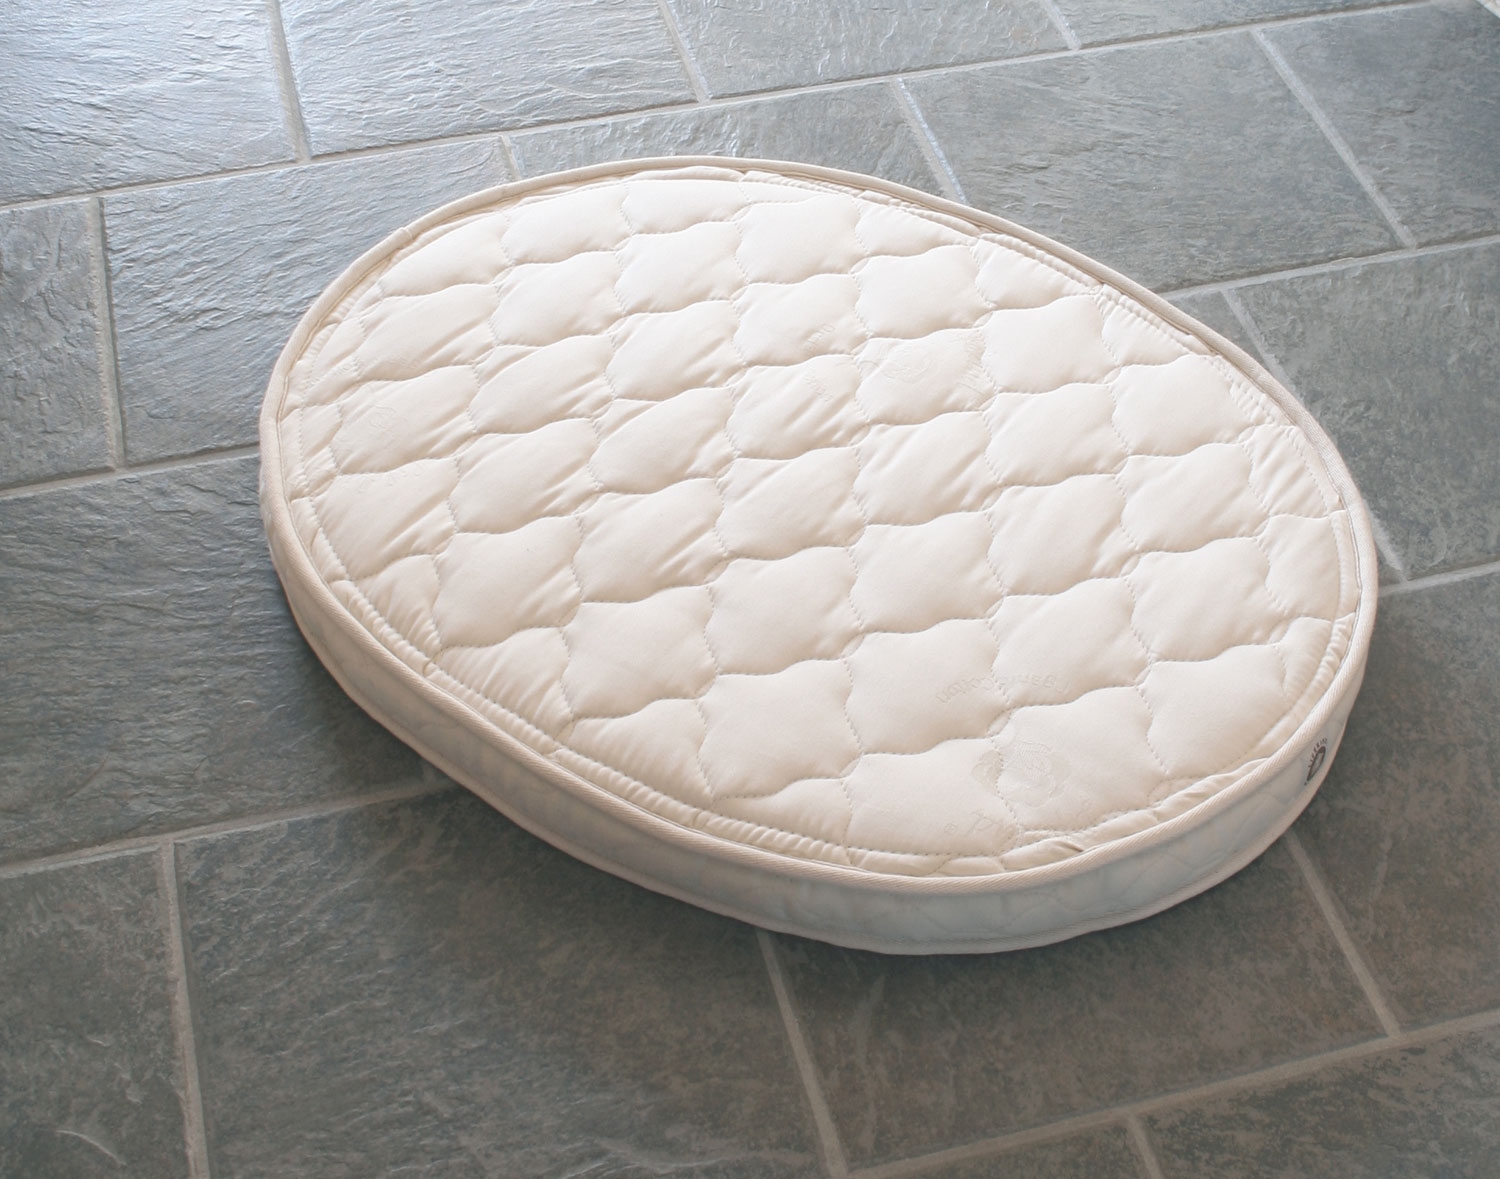 firm oval bassinet mattress